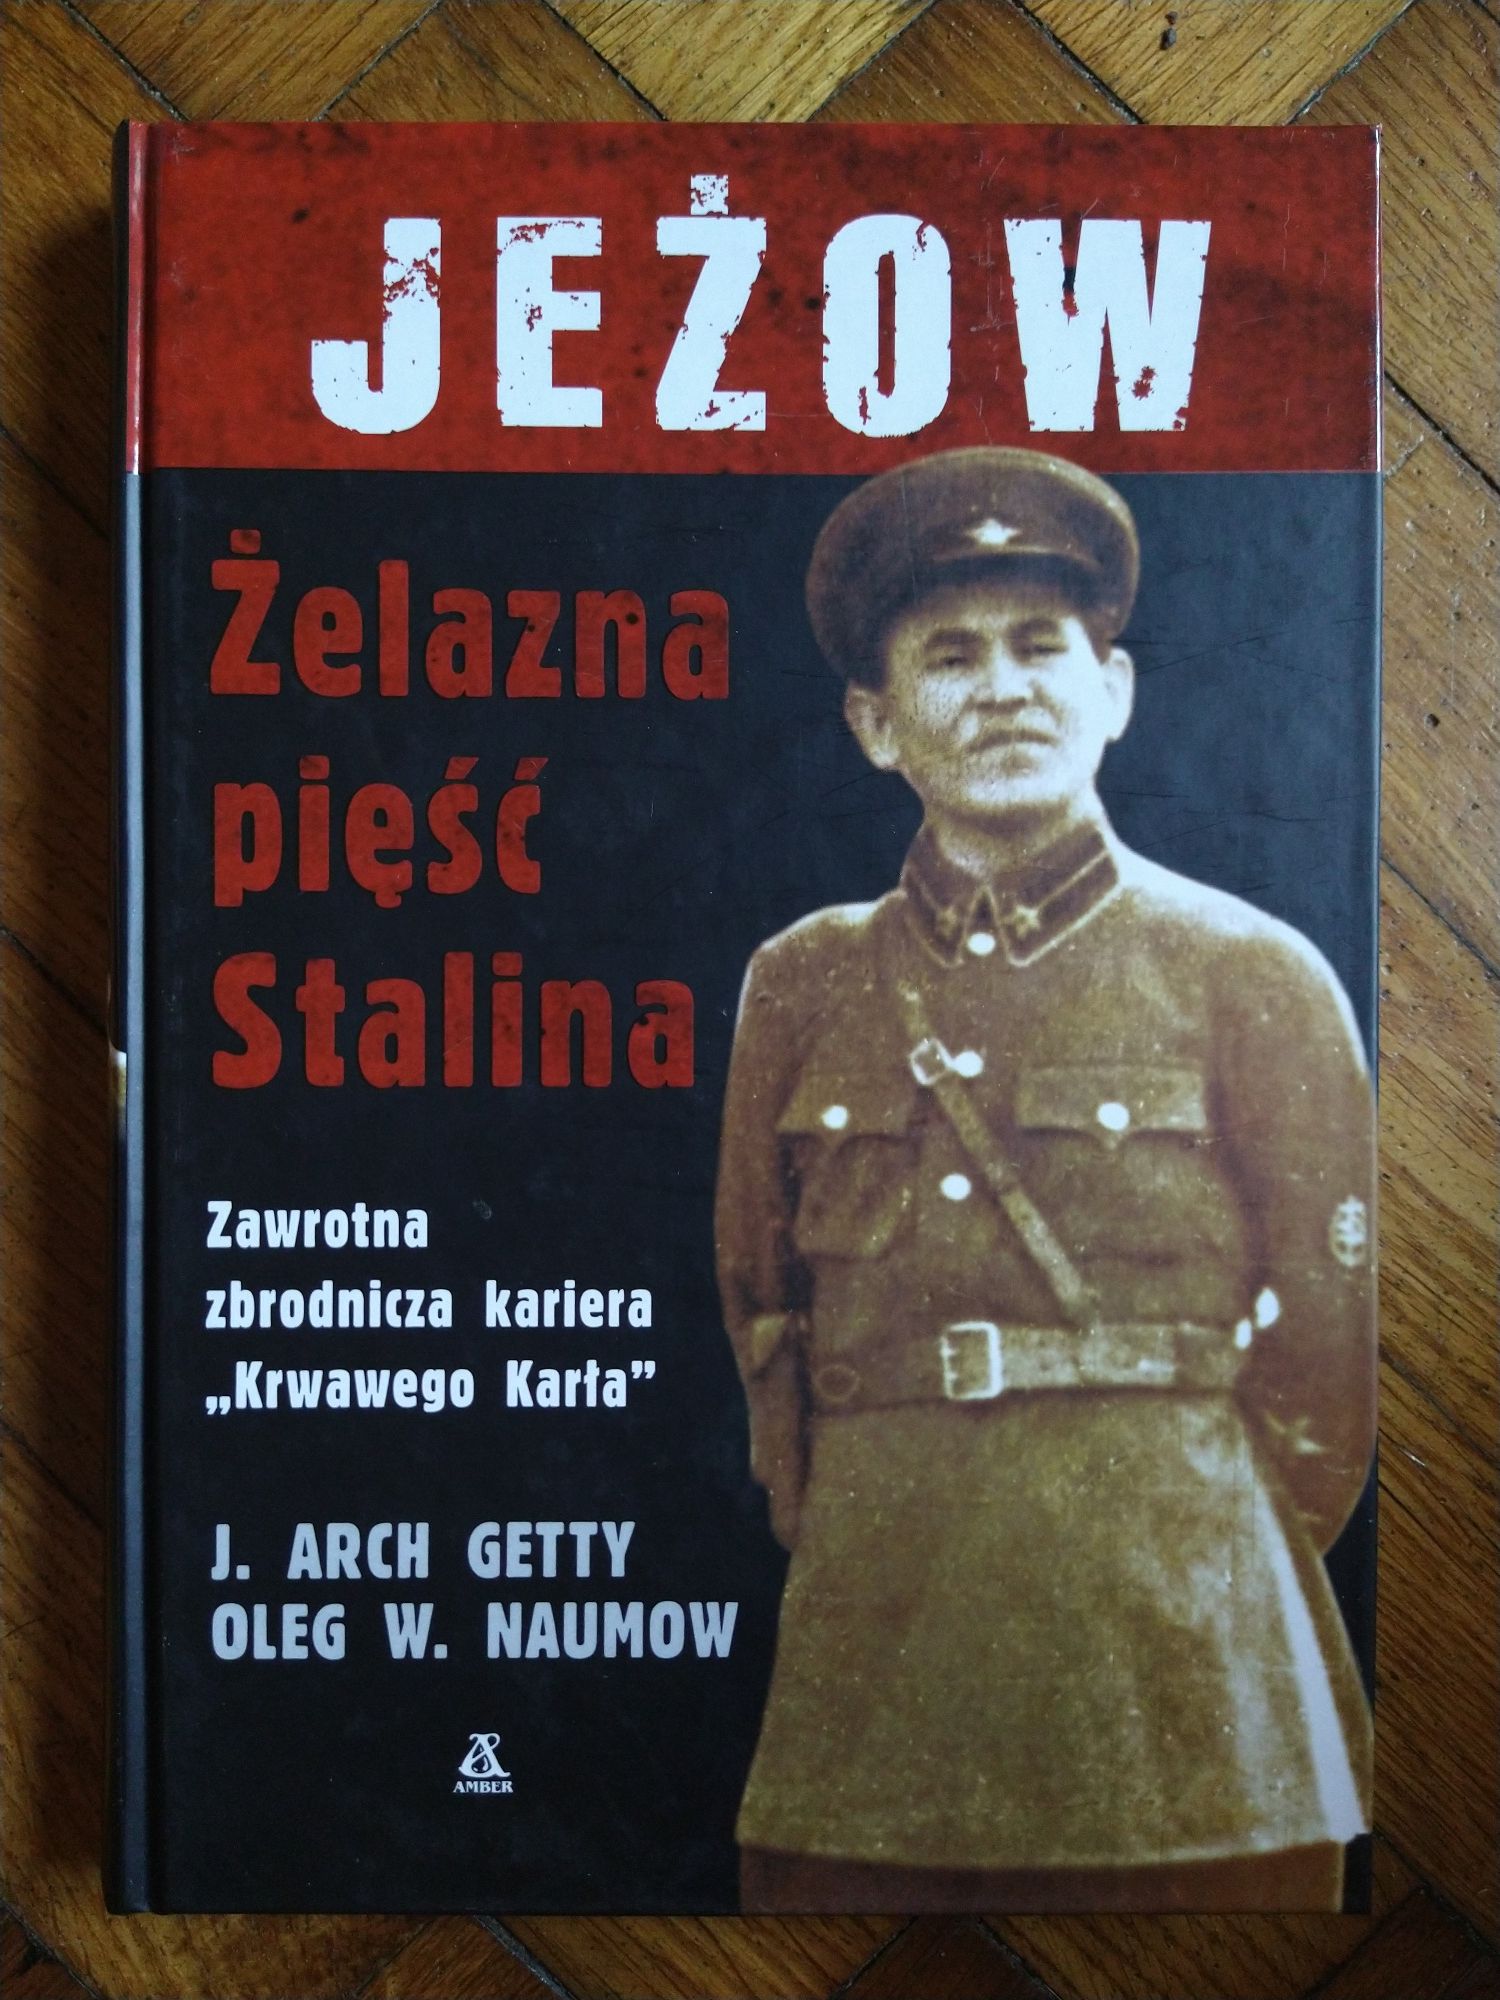 Jeżow, Żelazna pięść Stalina - J. Arch Getty, Oleg W. Naumow